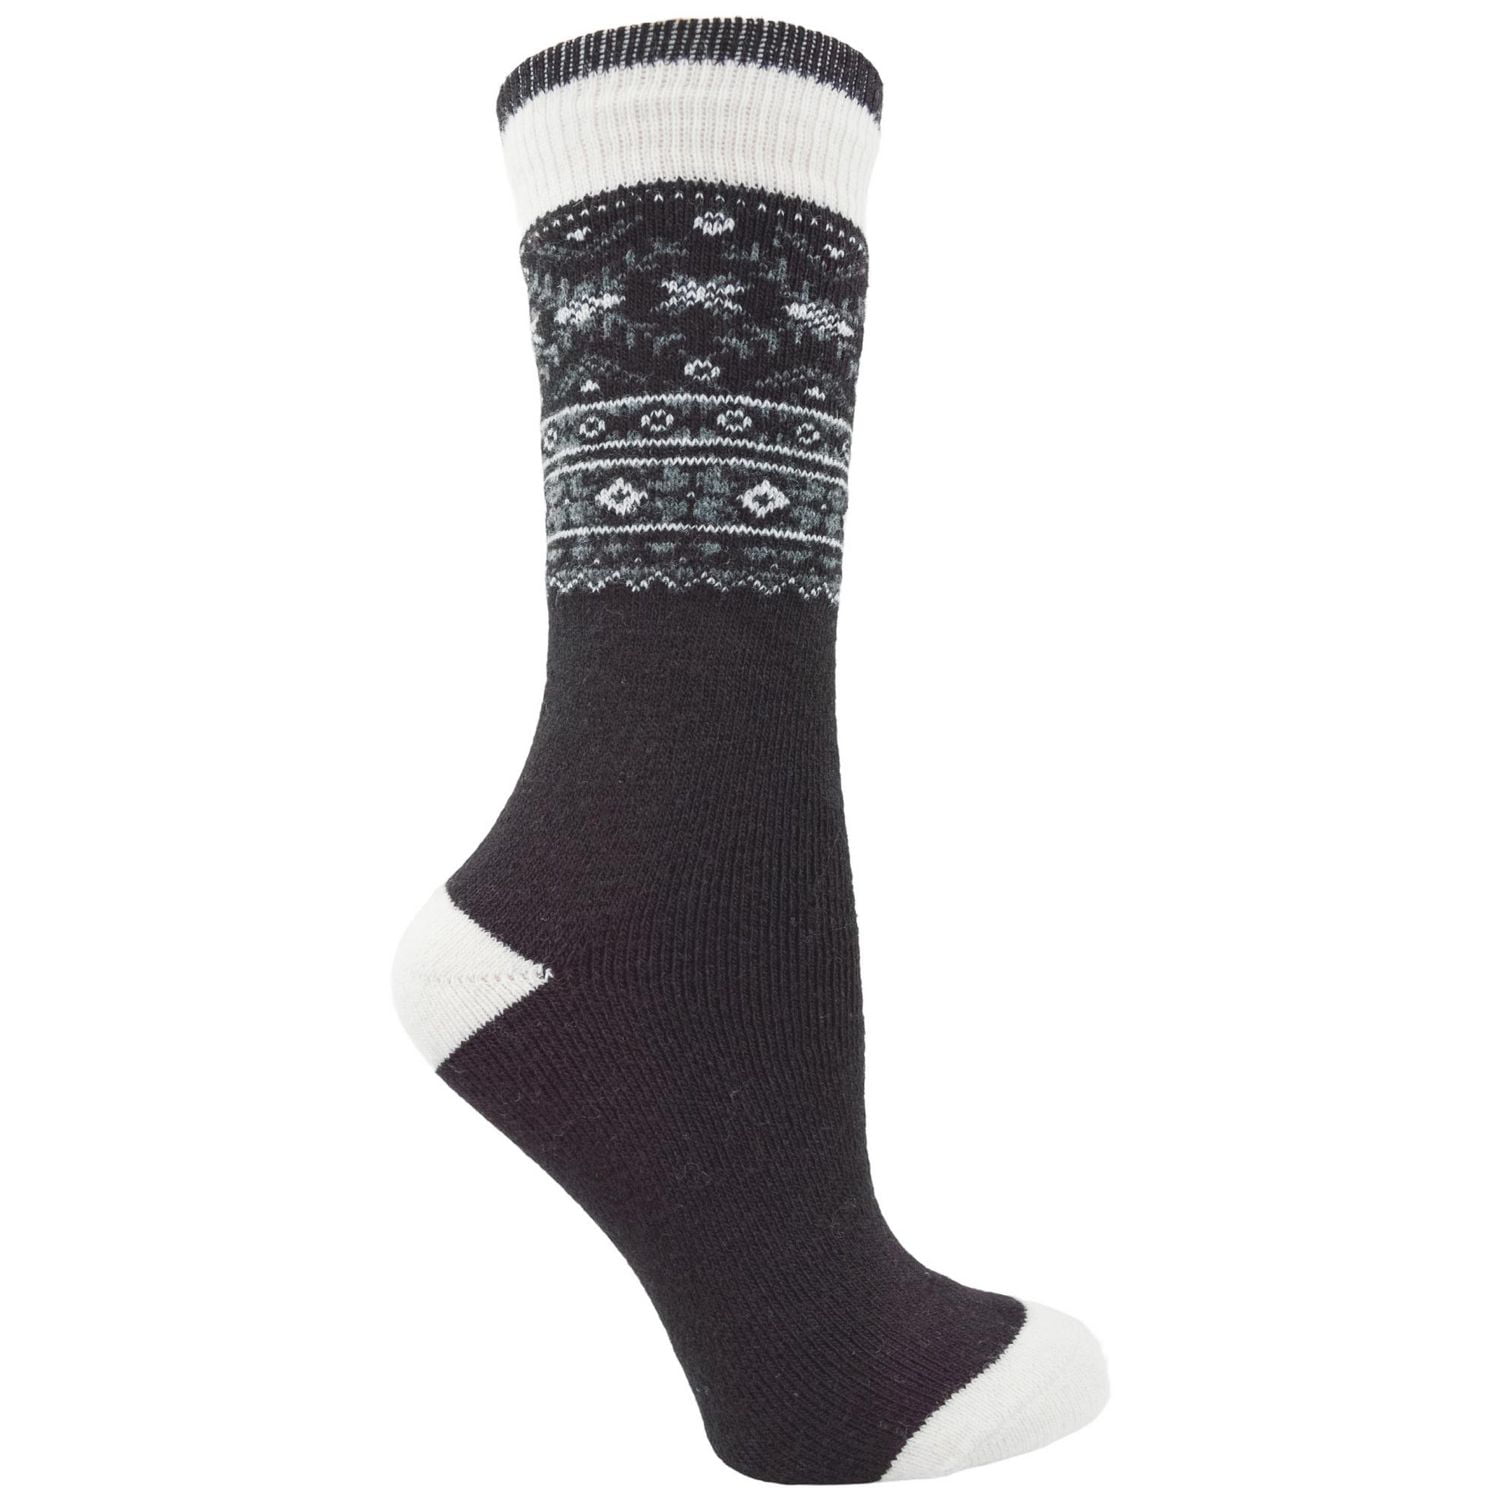 Boot Sock 3 pack - Large - Nootkas